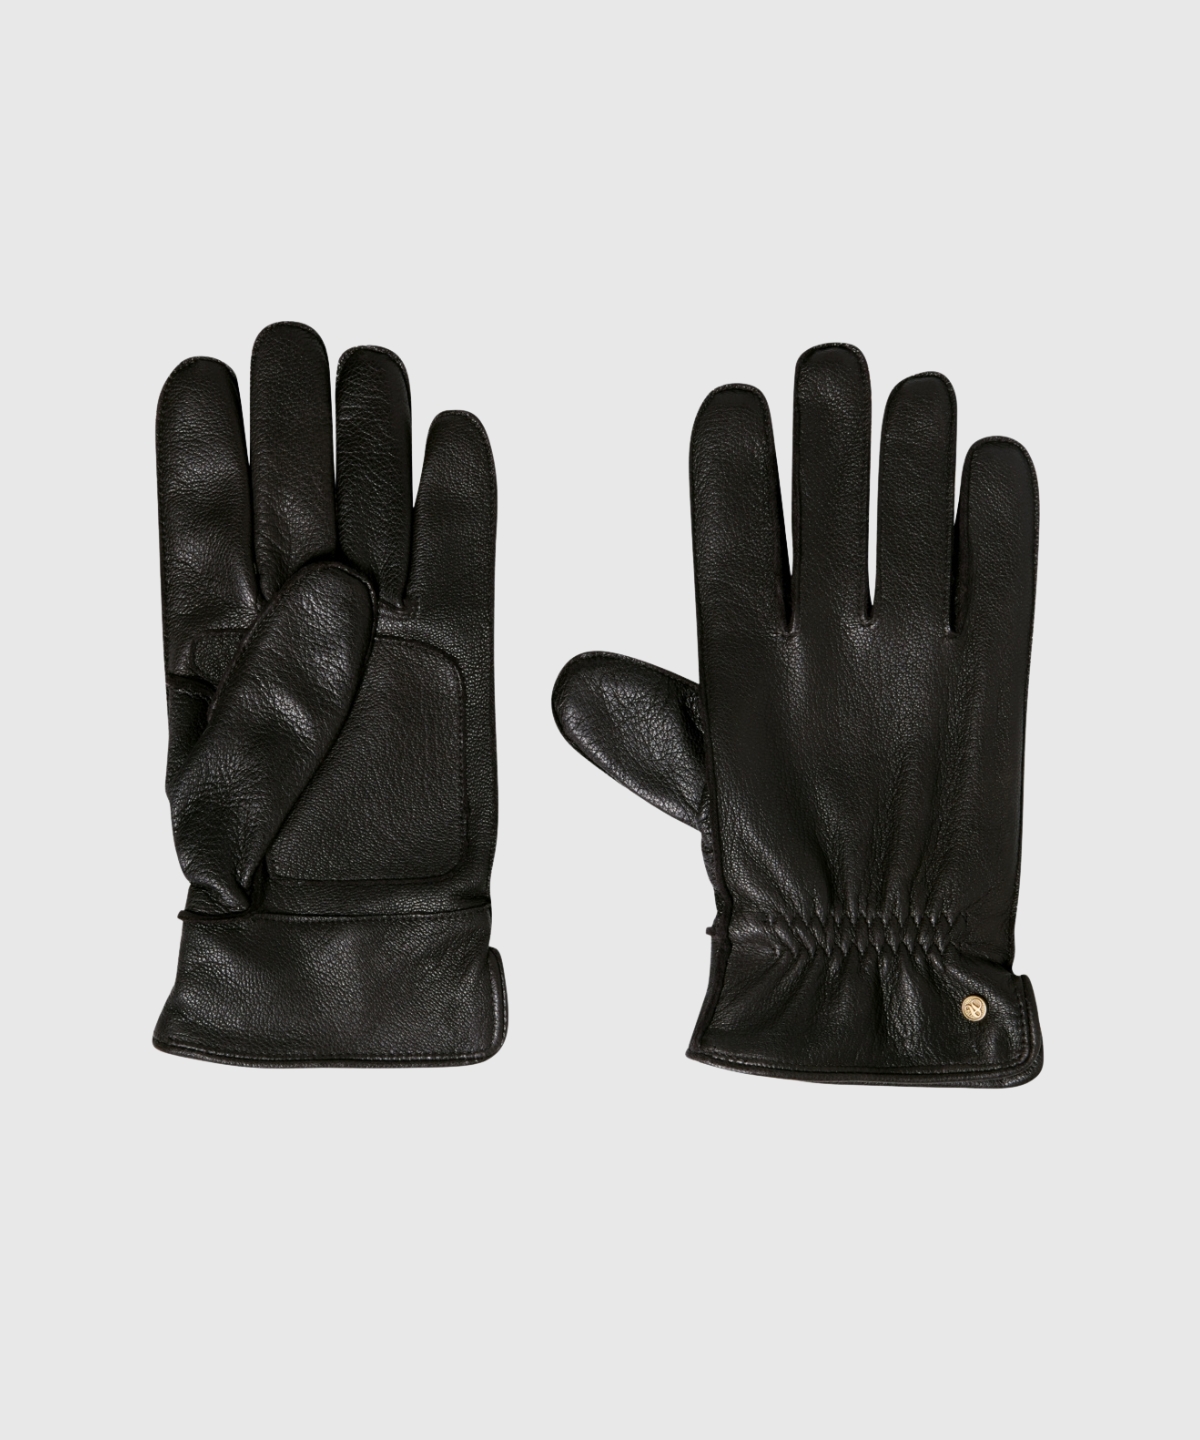 Grain leather gloves - Maxx Group